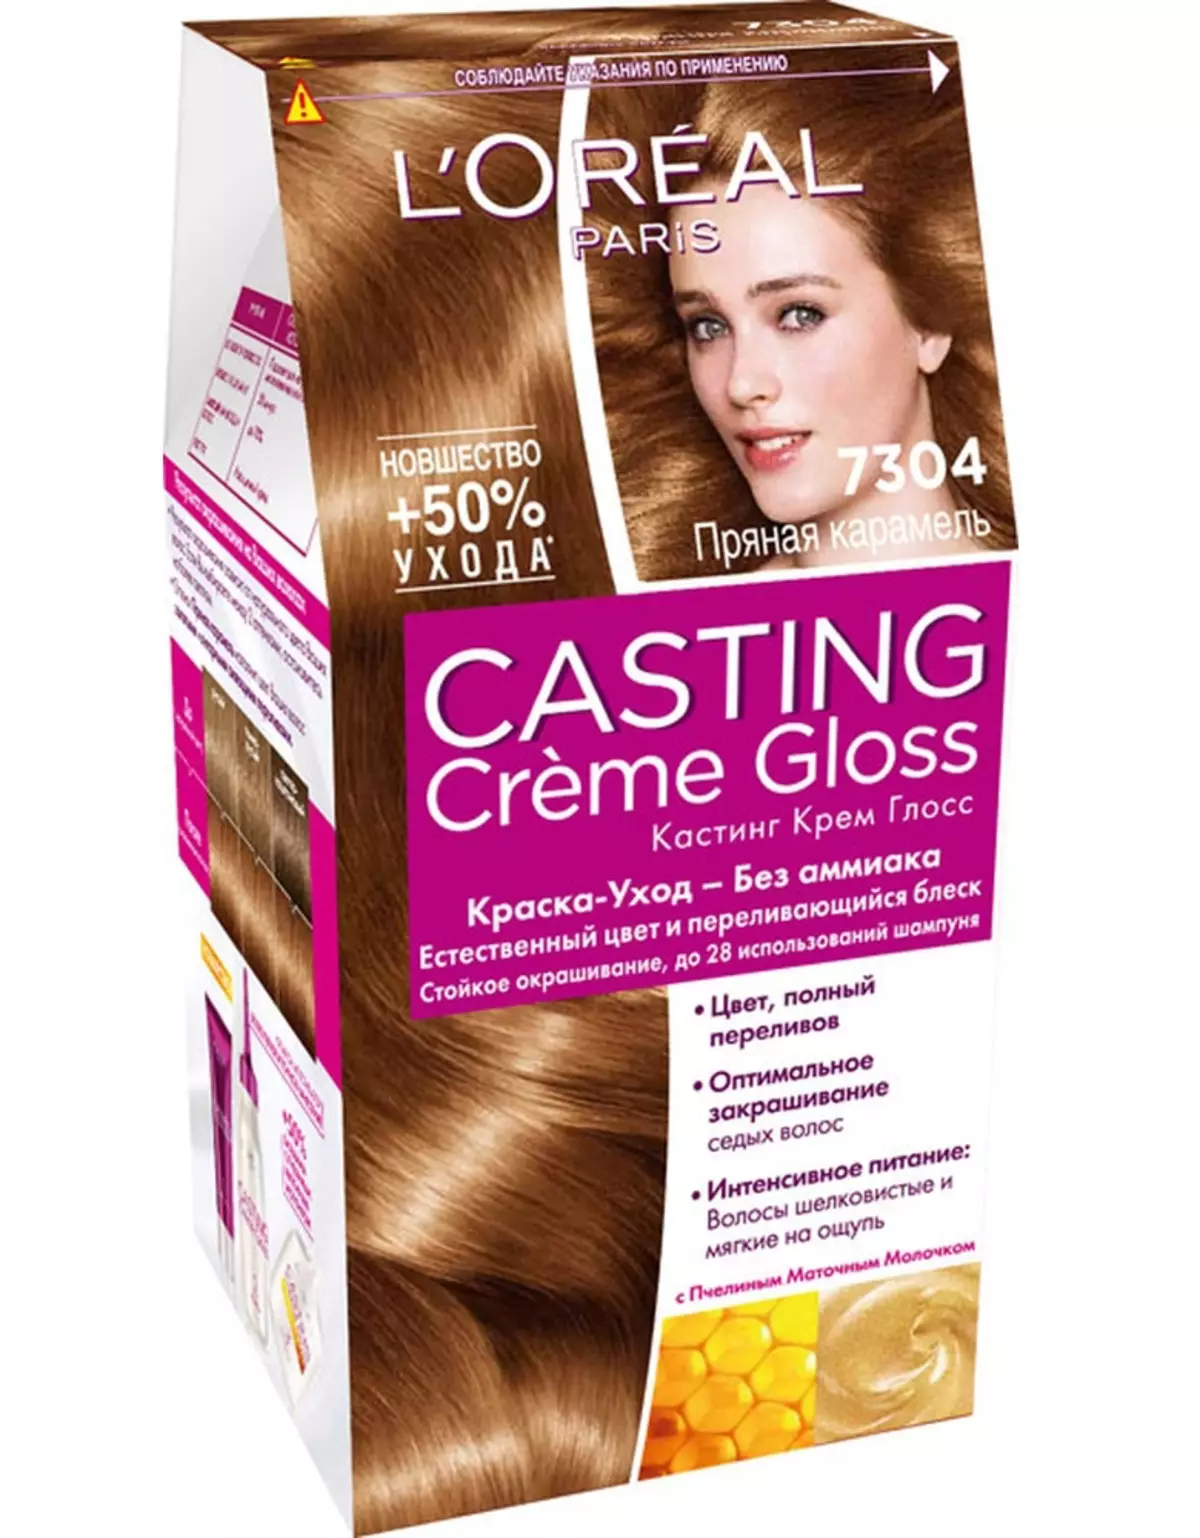 L'Oreal Paris краска для волос кастинг крем Глосс 7.304 пряная карамель